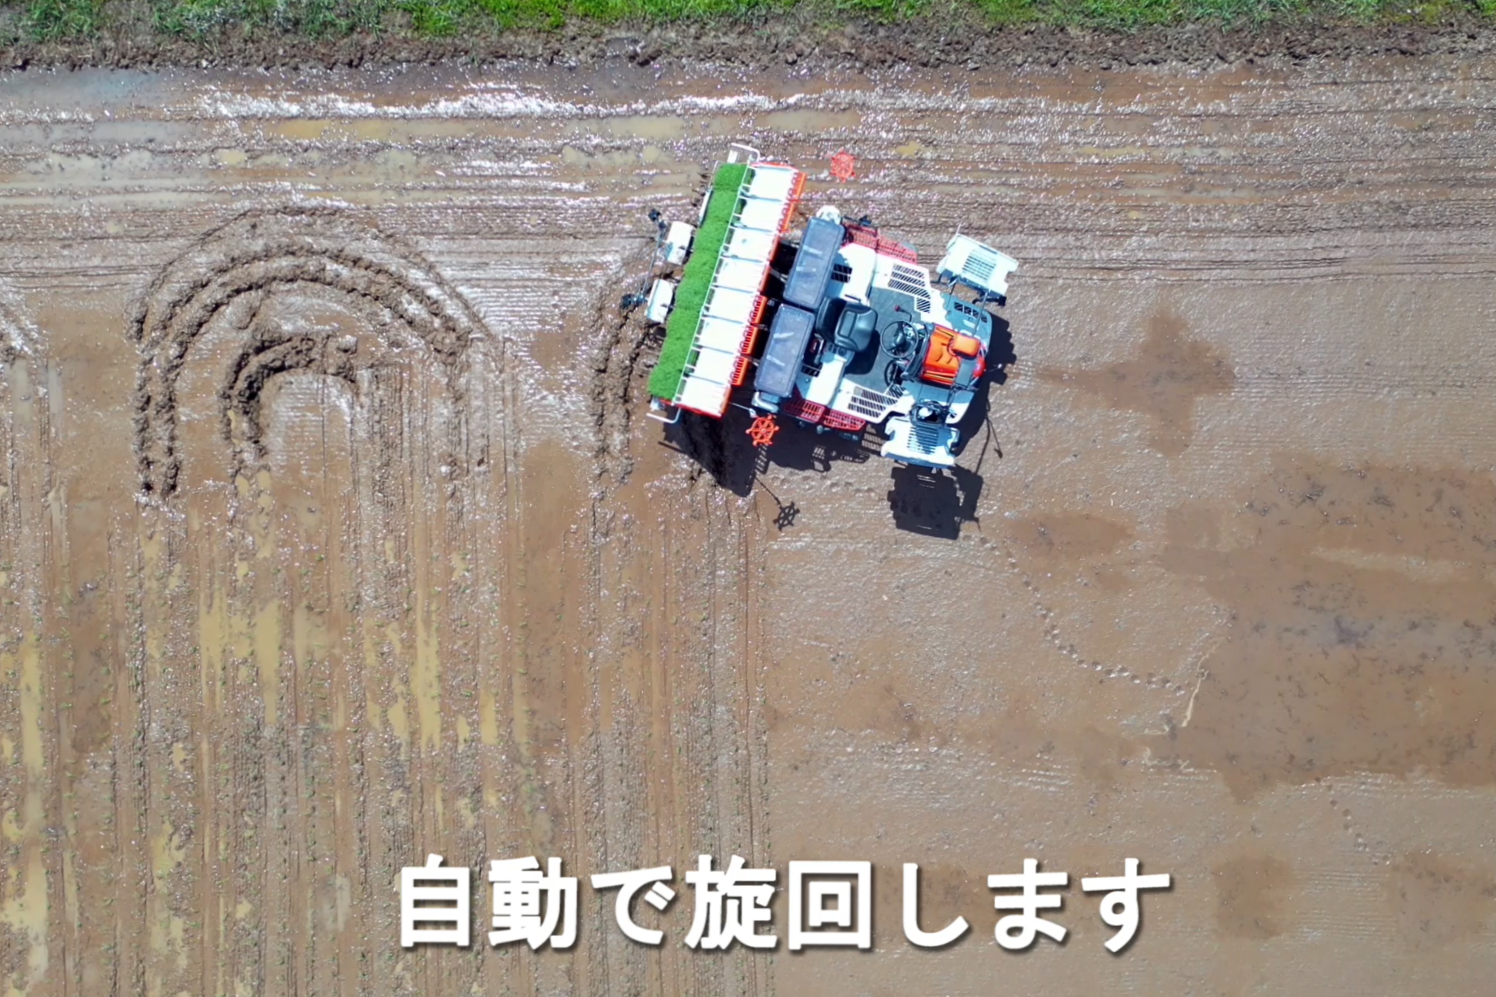 ロボット田植機の自動運転機能による田植え作業を説明した動画のサムネイル